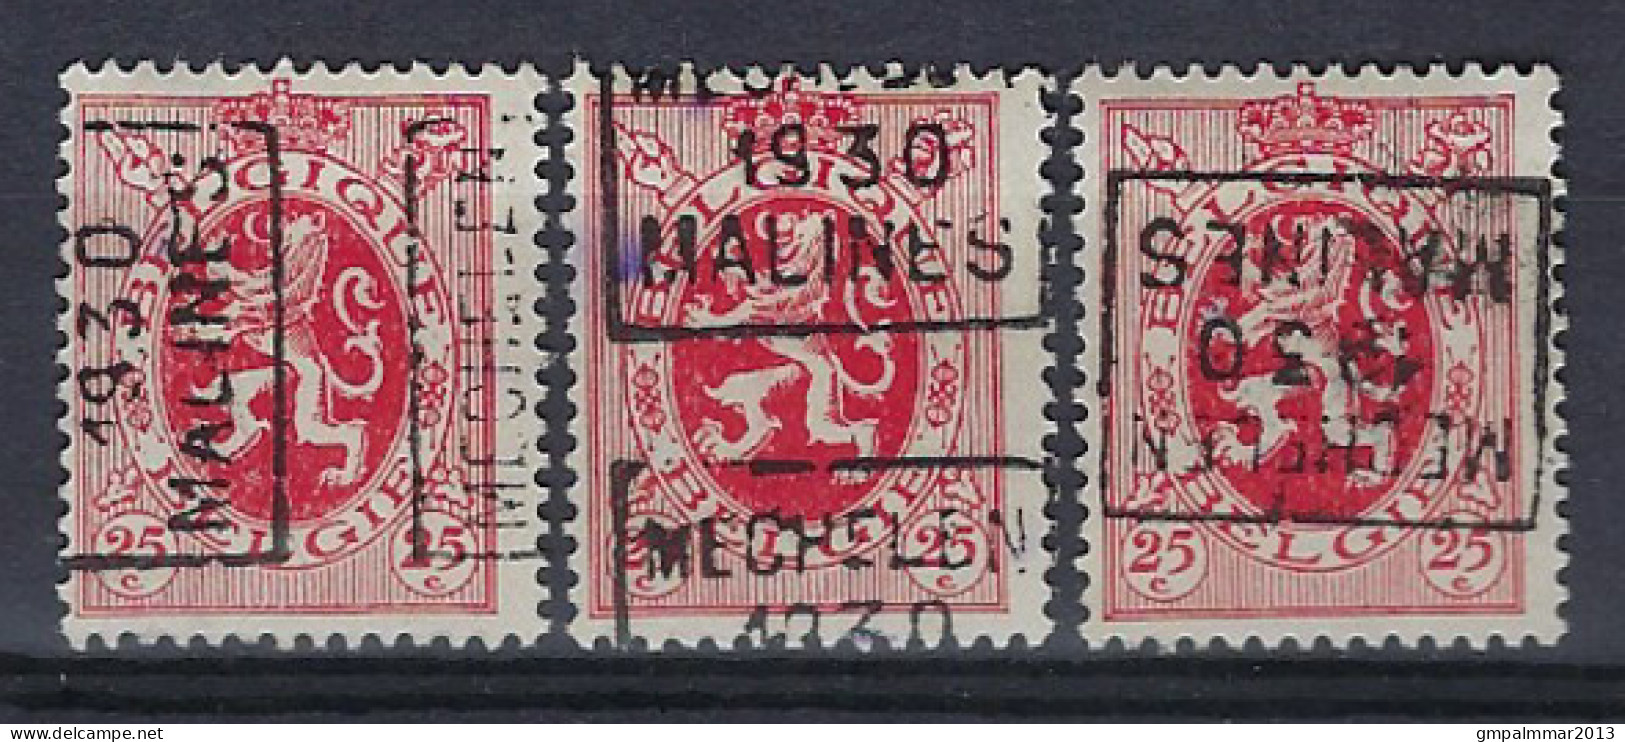 Zegel Nr. 282 Voorafgestempeld Nr. 5919  A + C + D   MECHELEN   1930  MALINES  ;  Staat Zie Scan ! ​LOT 264 - Rollenmarken 1930-..